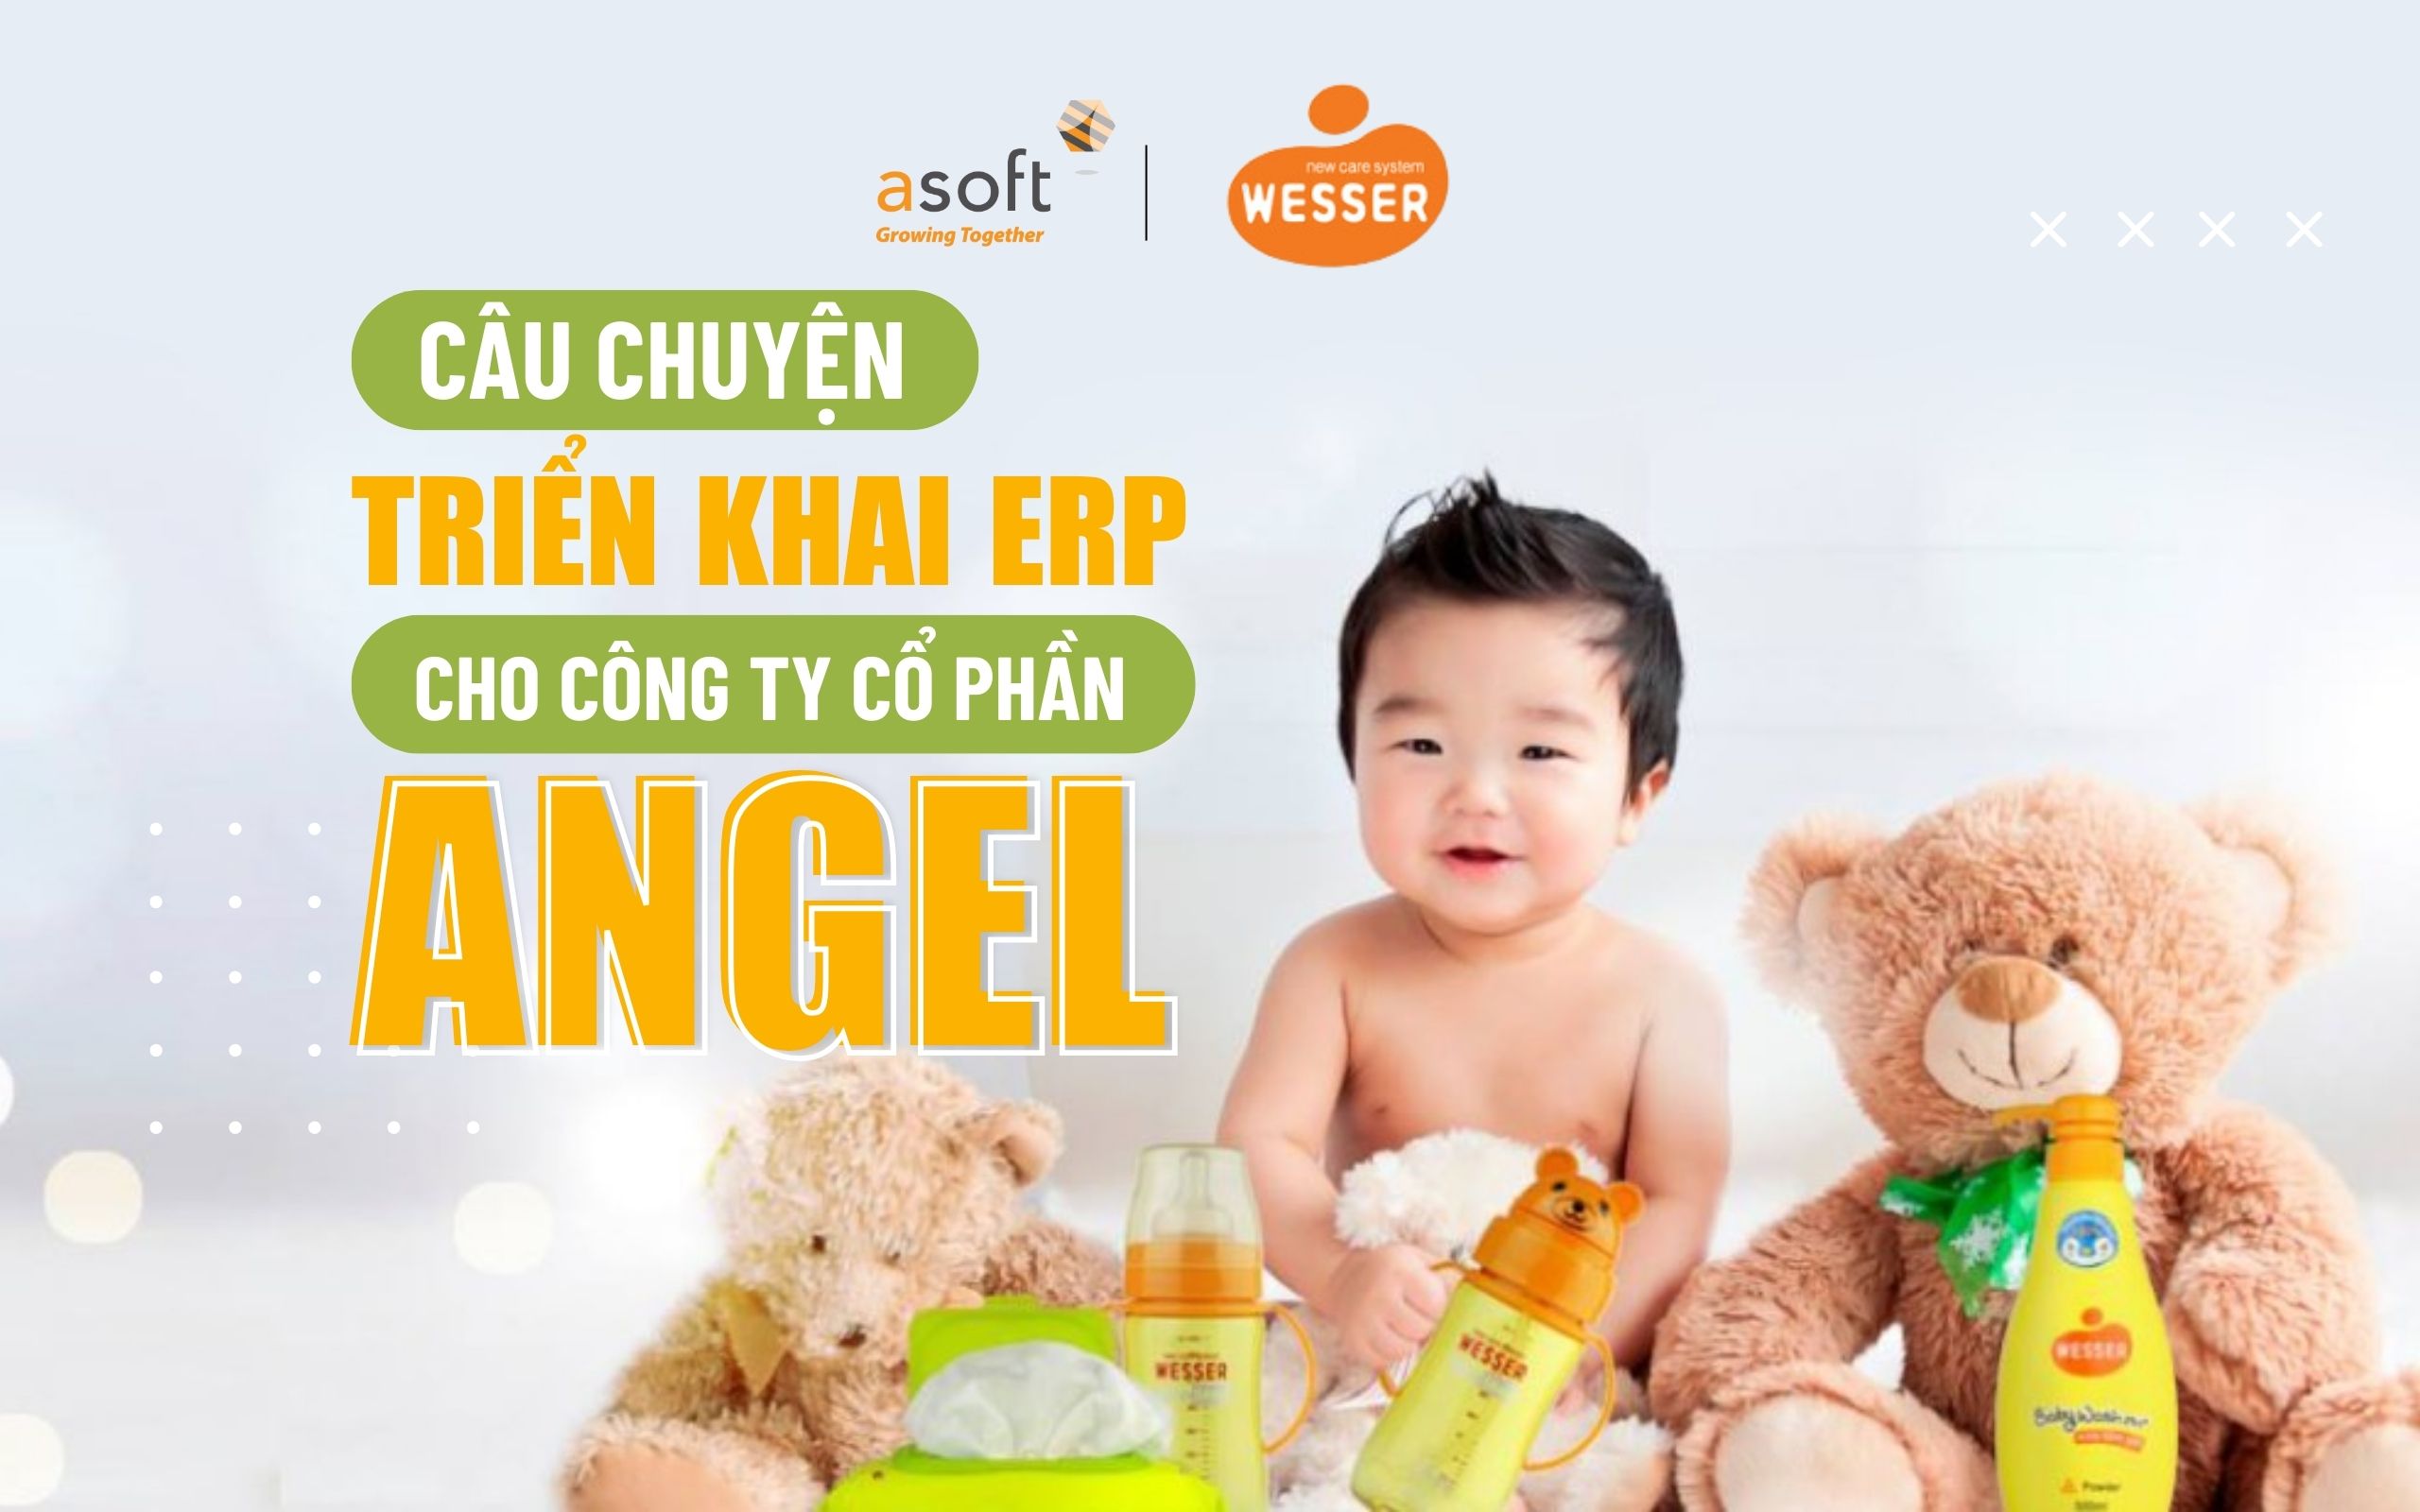 Câu chuyện triển khai ERP cho Công ty Cổ phần Angel (Wesser) Việt Nam